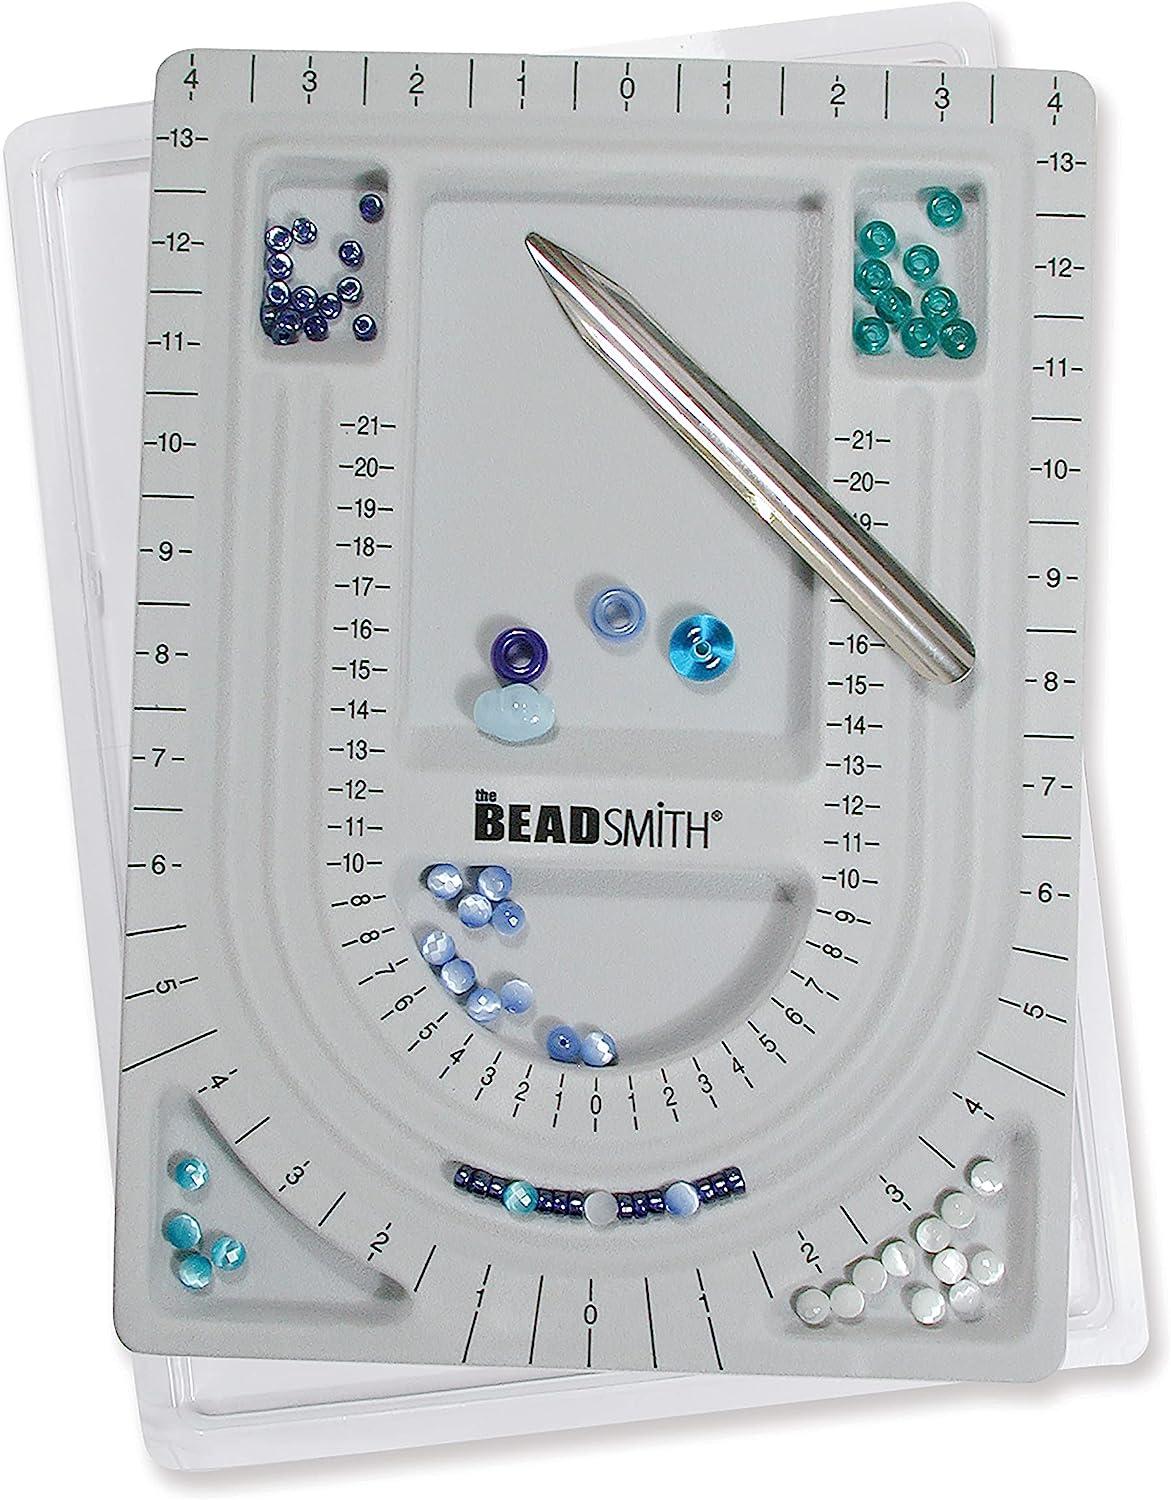 Beading Needles Size 8 - Beadsmith, Beadstringing, Jewelry making